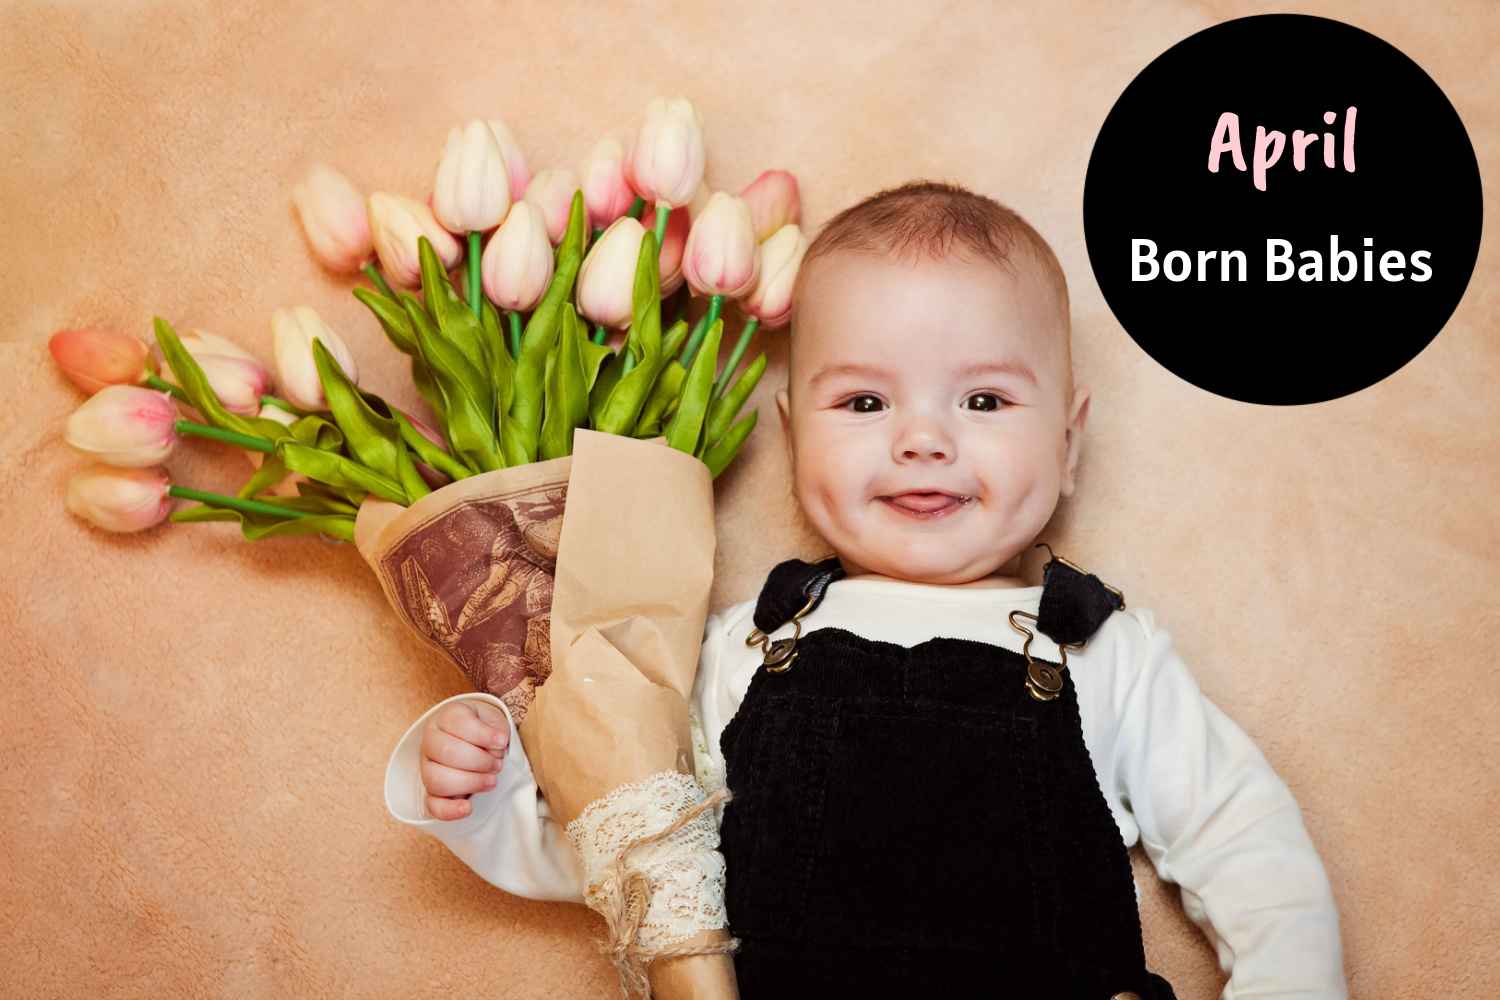 April Born Babies